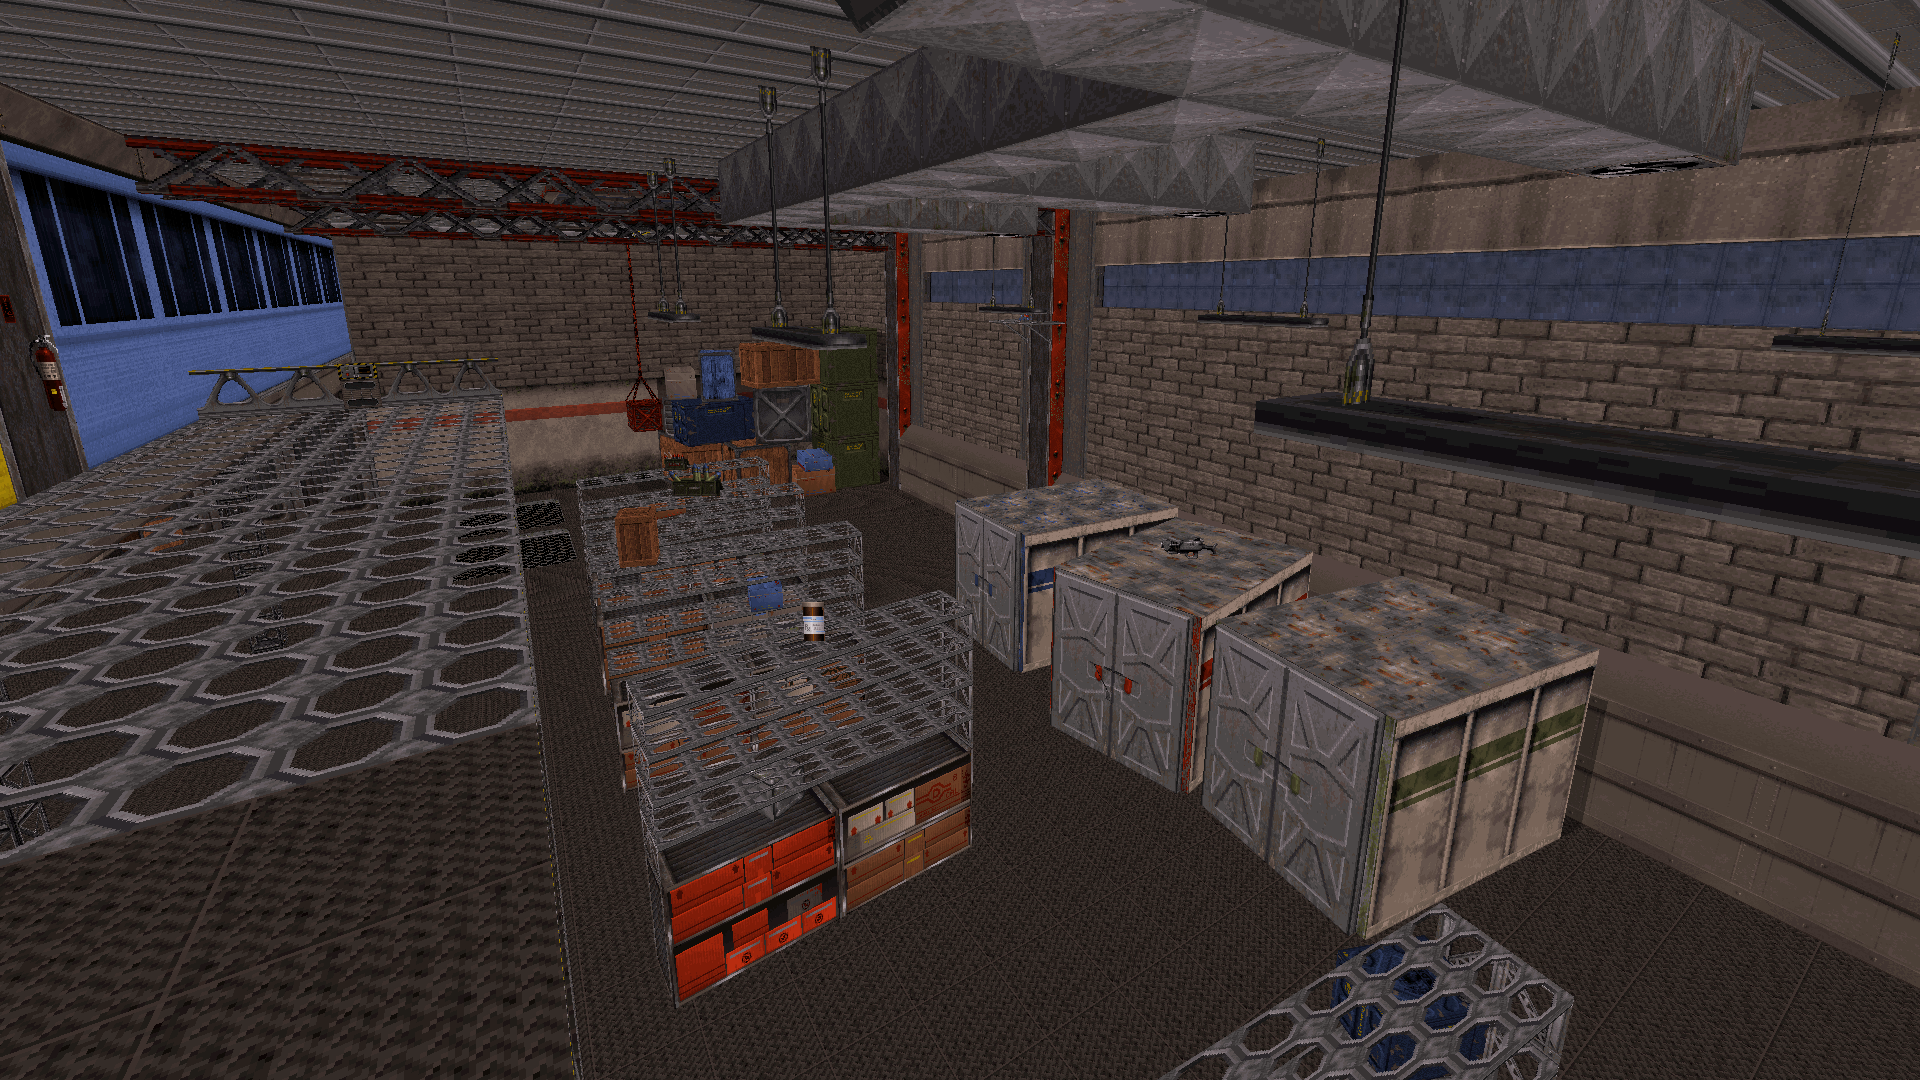 Warehouse where the aliens store their evidence against Duke!